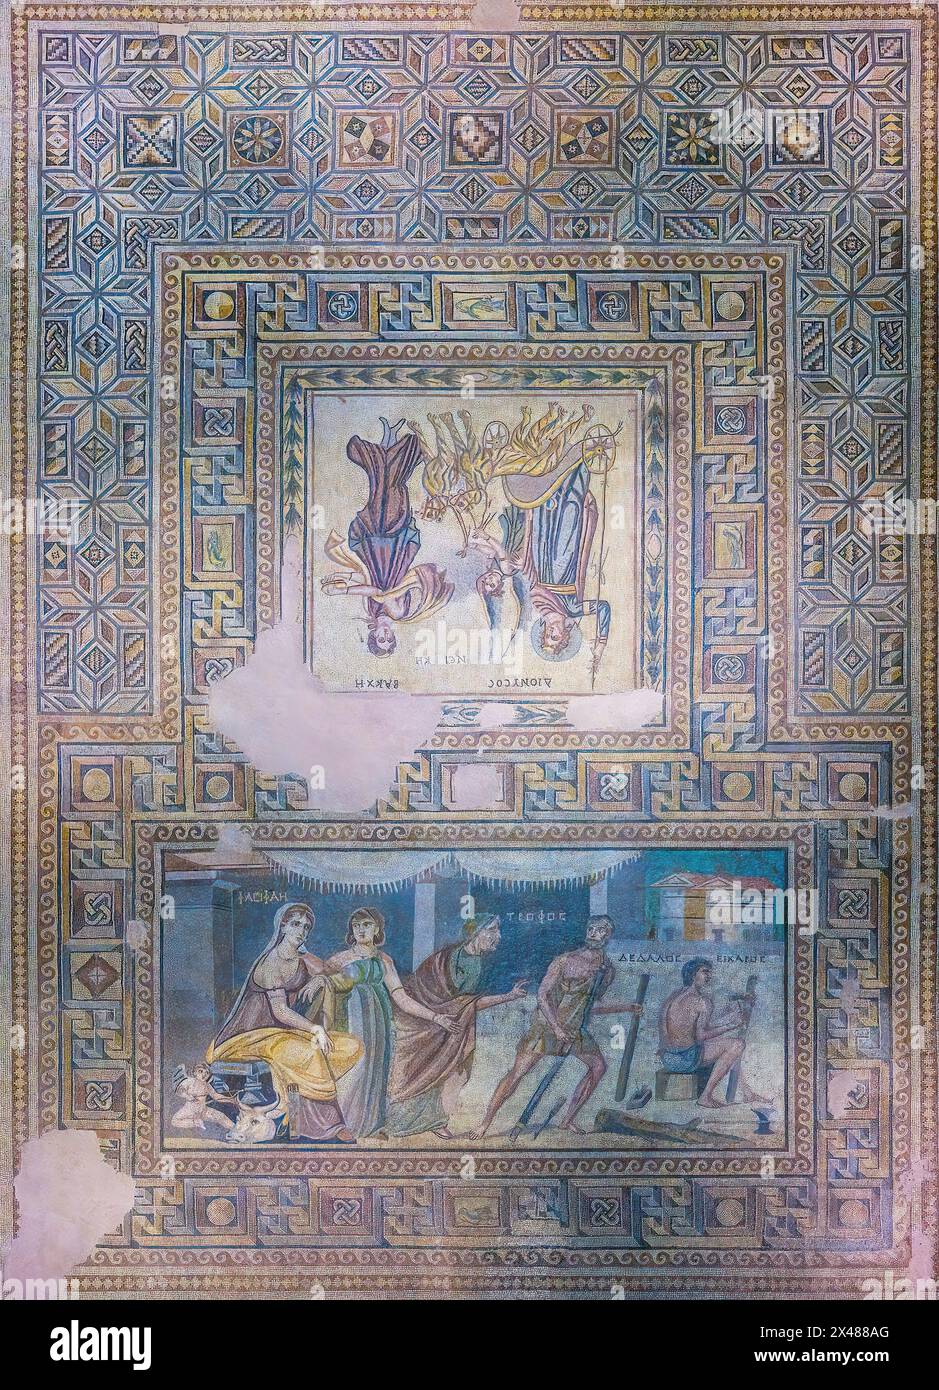 Pasiphae and Daedalus mosaic, Zeugma mosaic Museum, Gaziantep, Turkey Stock Photo